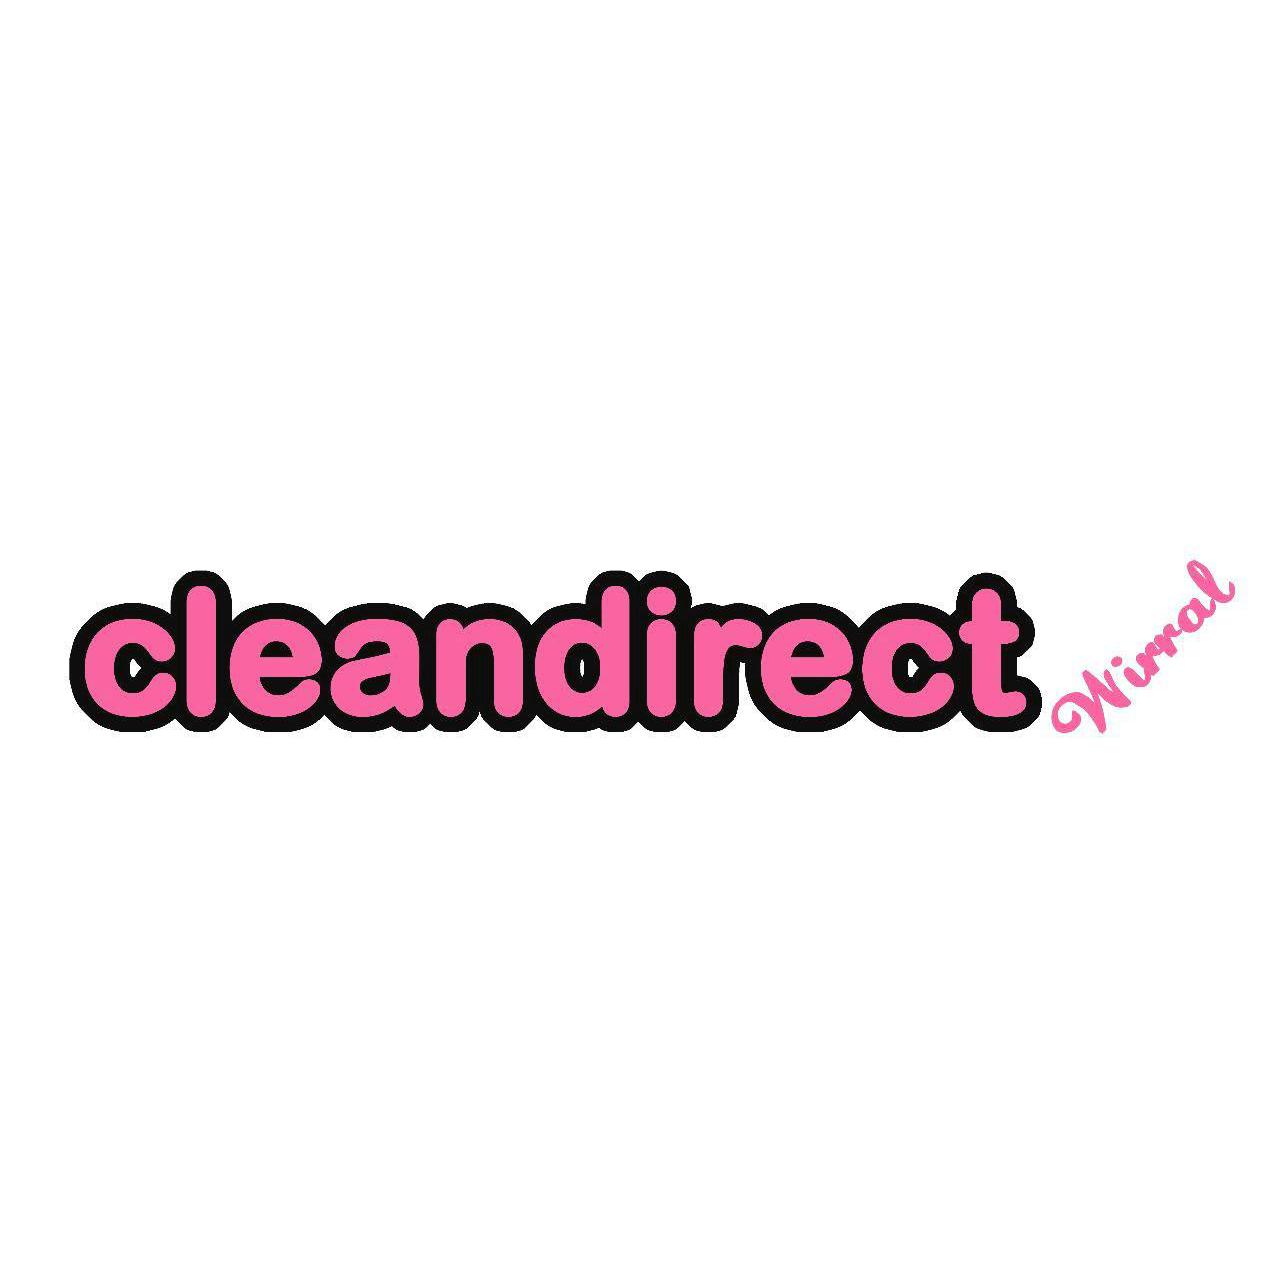 Cleandirect Wirral - Birkenhead, Merseyside CH41 1JW - 01516 381062 | ShowMeLocal.com